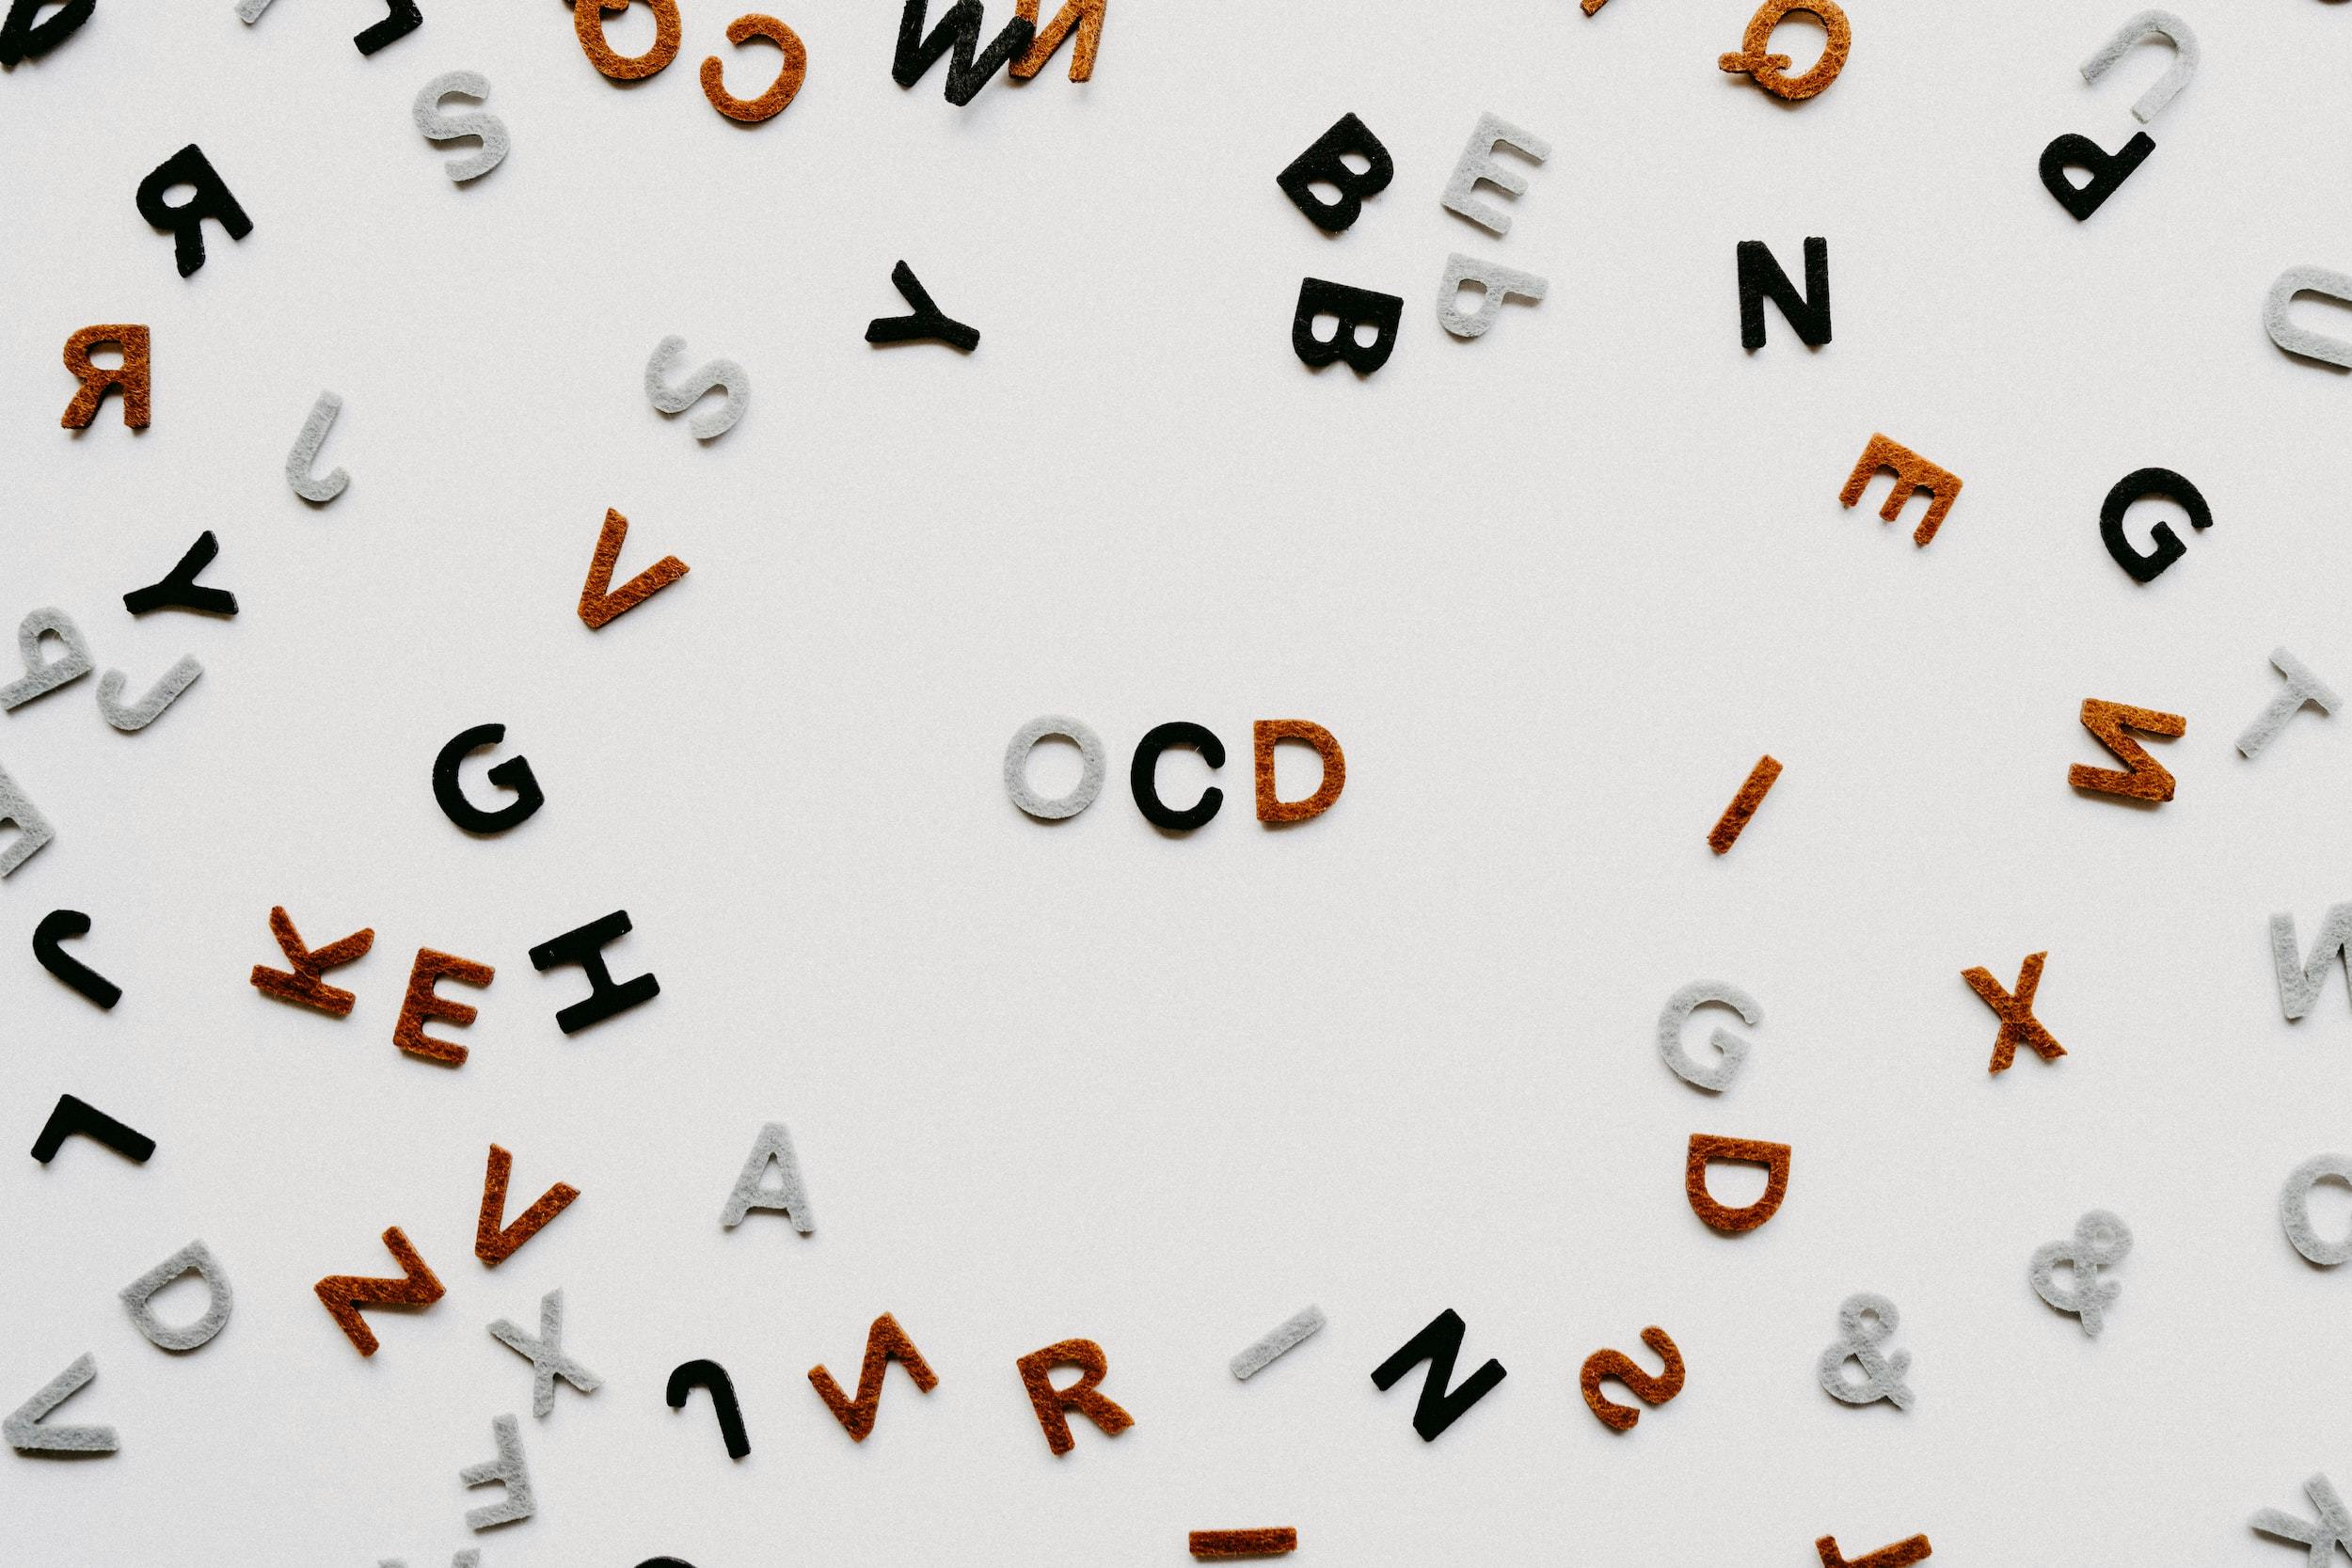 Scritta "OCD" che compare al centro di molte altre lettere sparse.